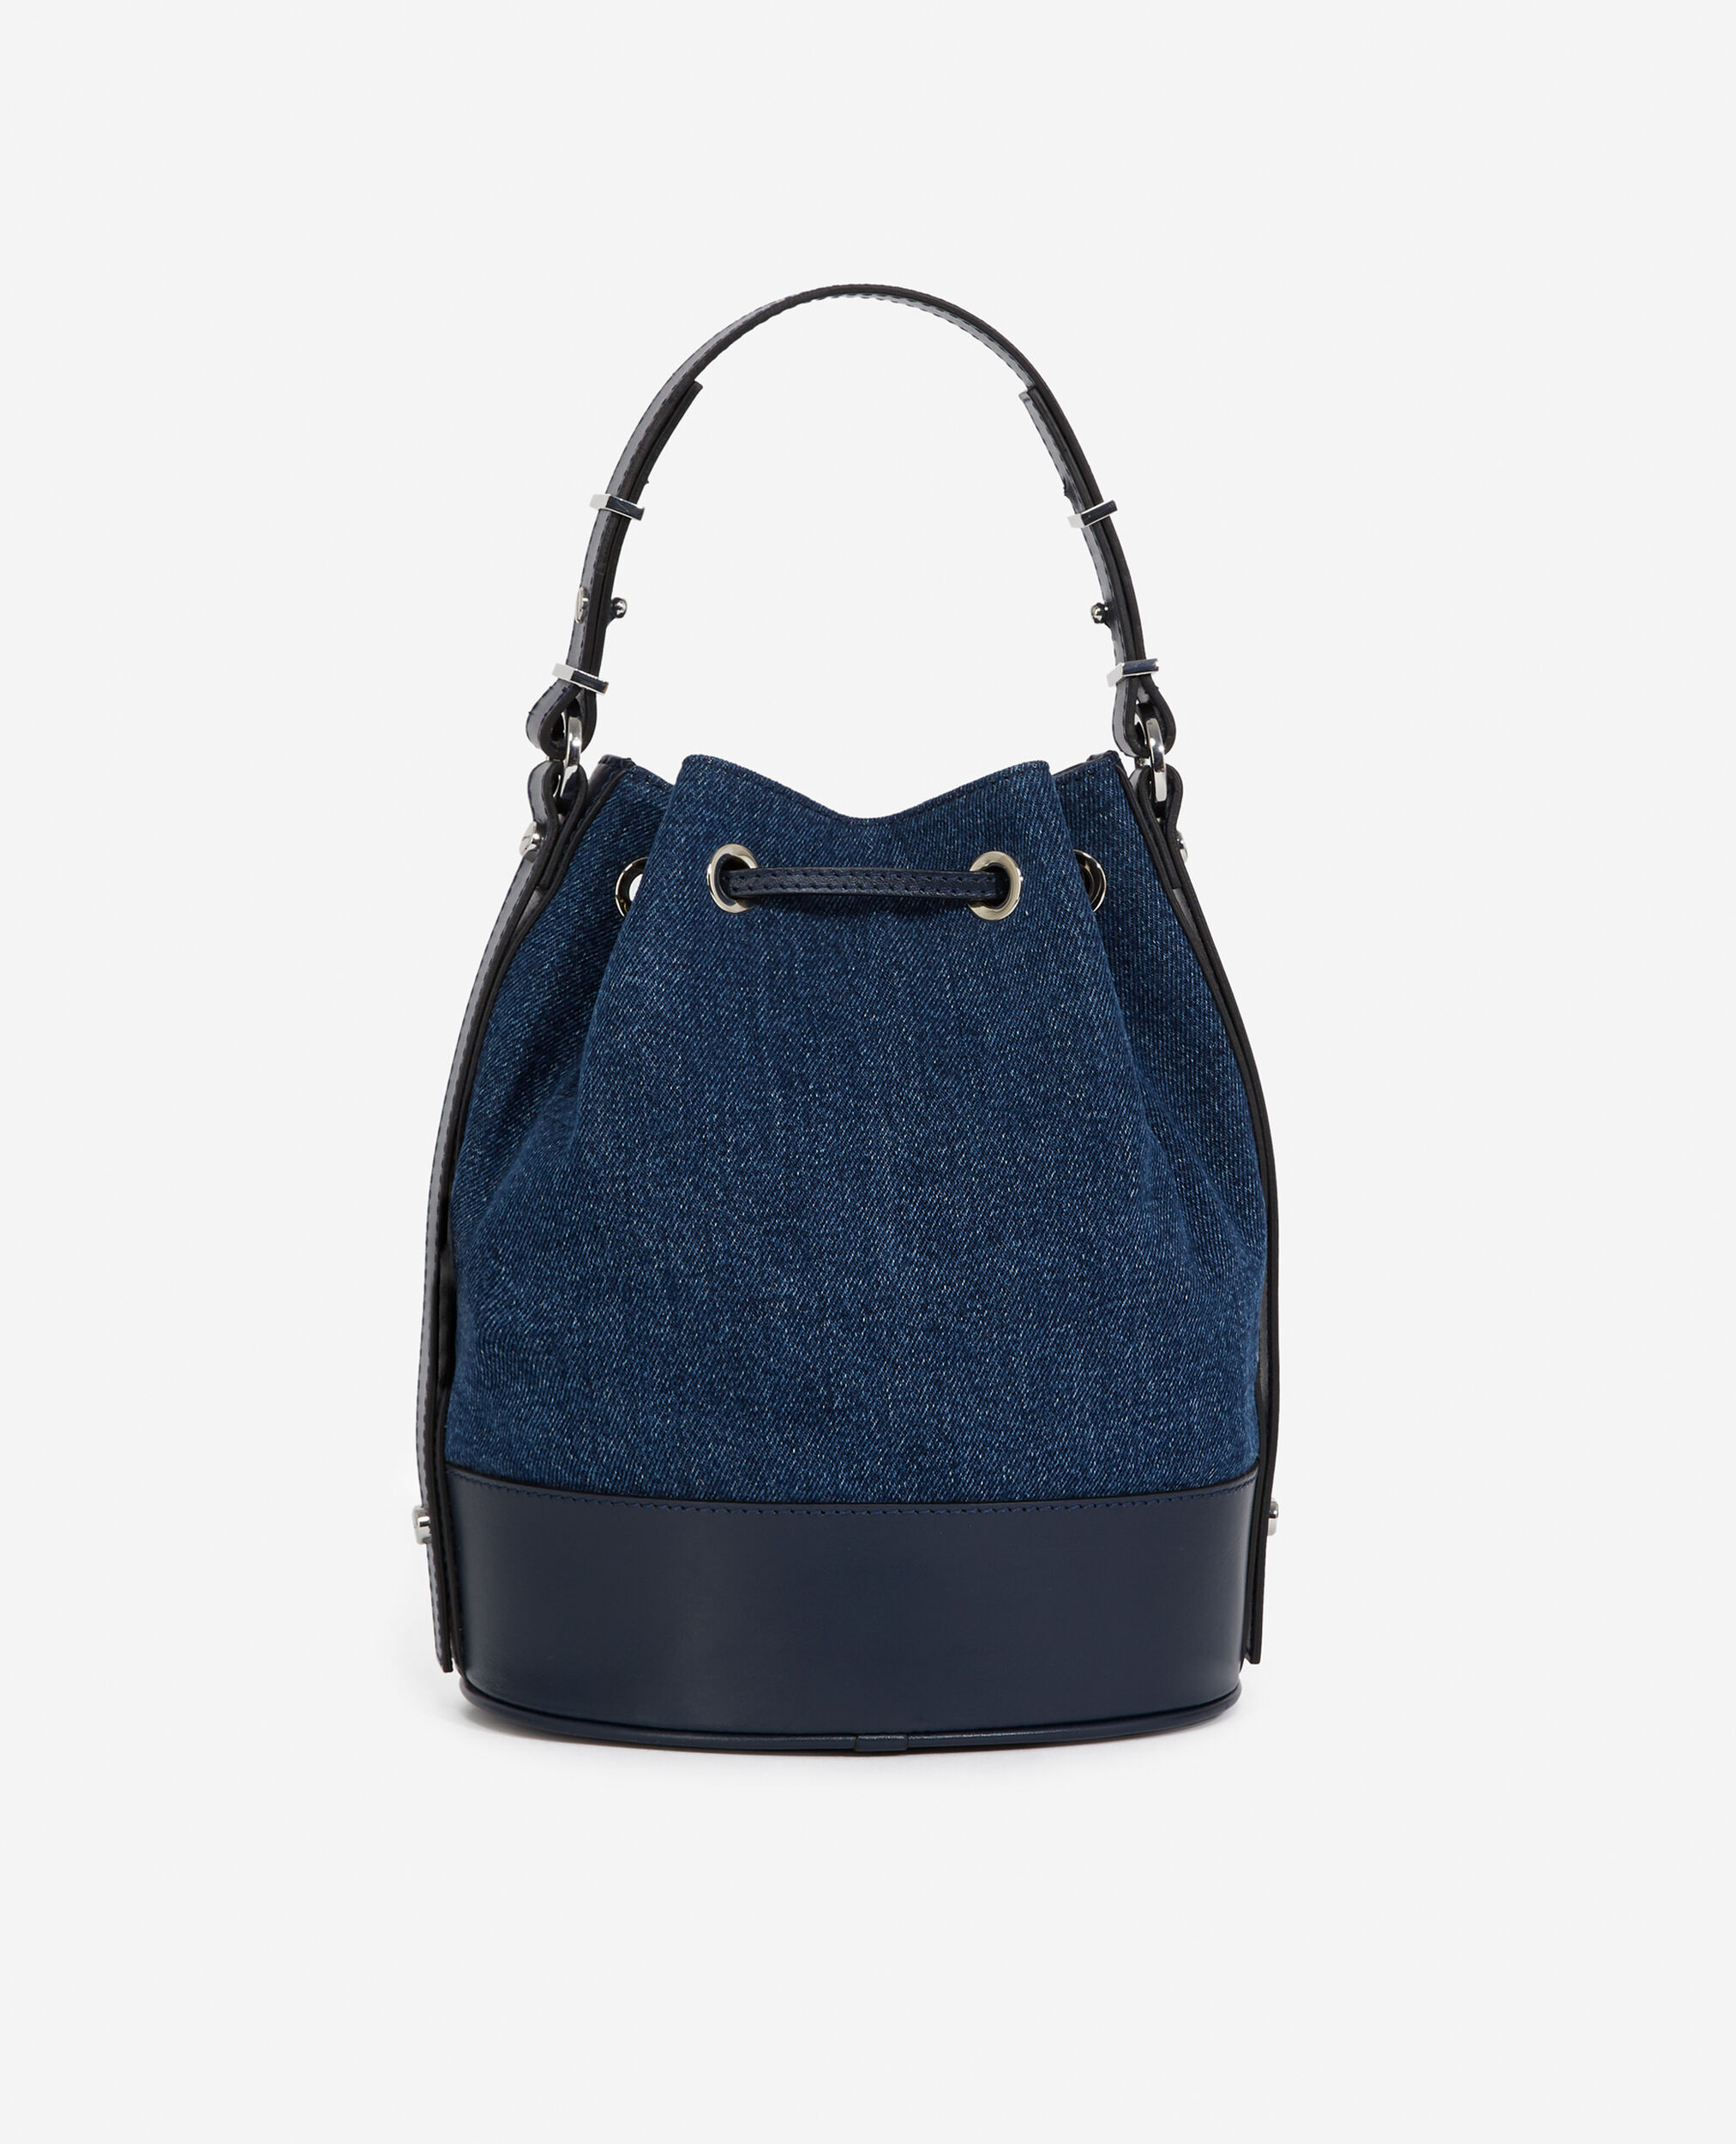 Medium Tina bag in dark blue denim, BLUE DENIM, hi-res image number null